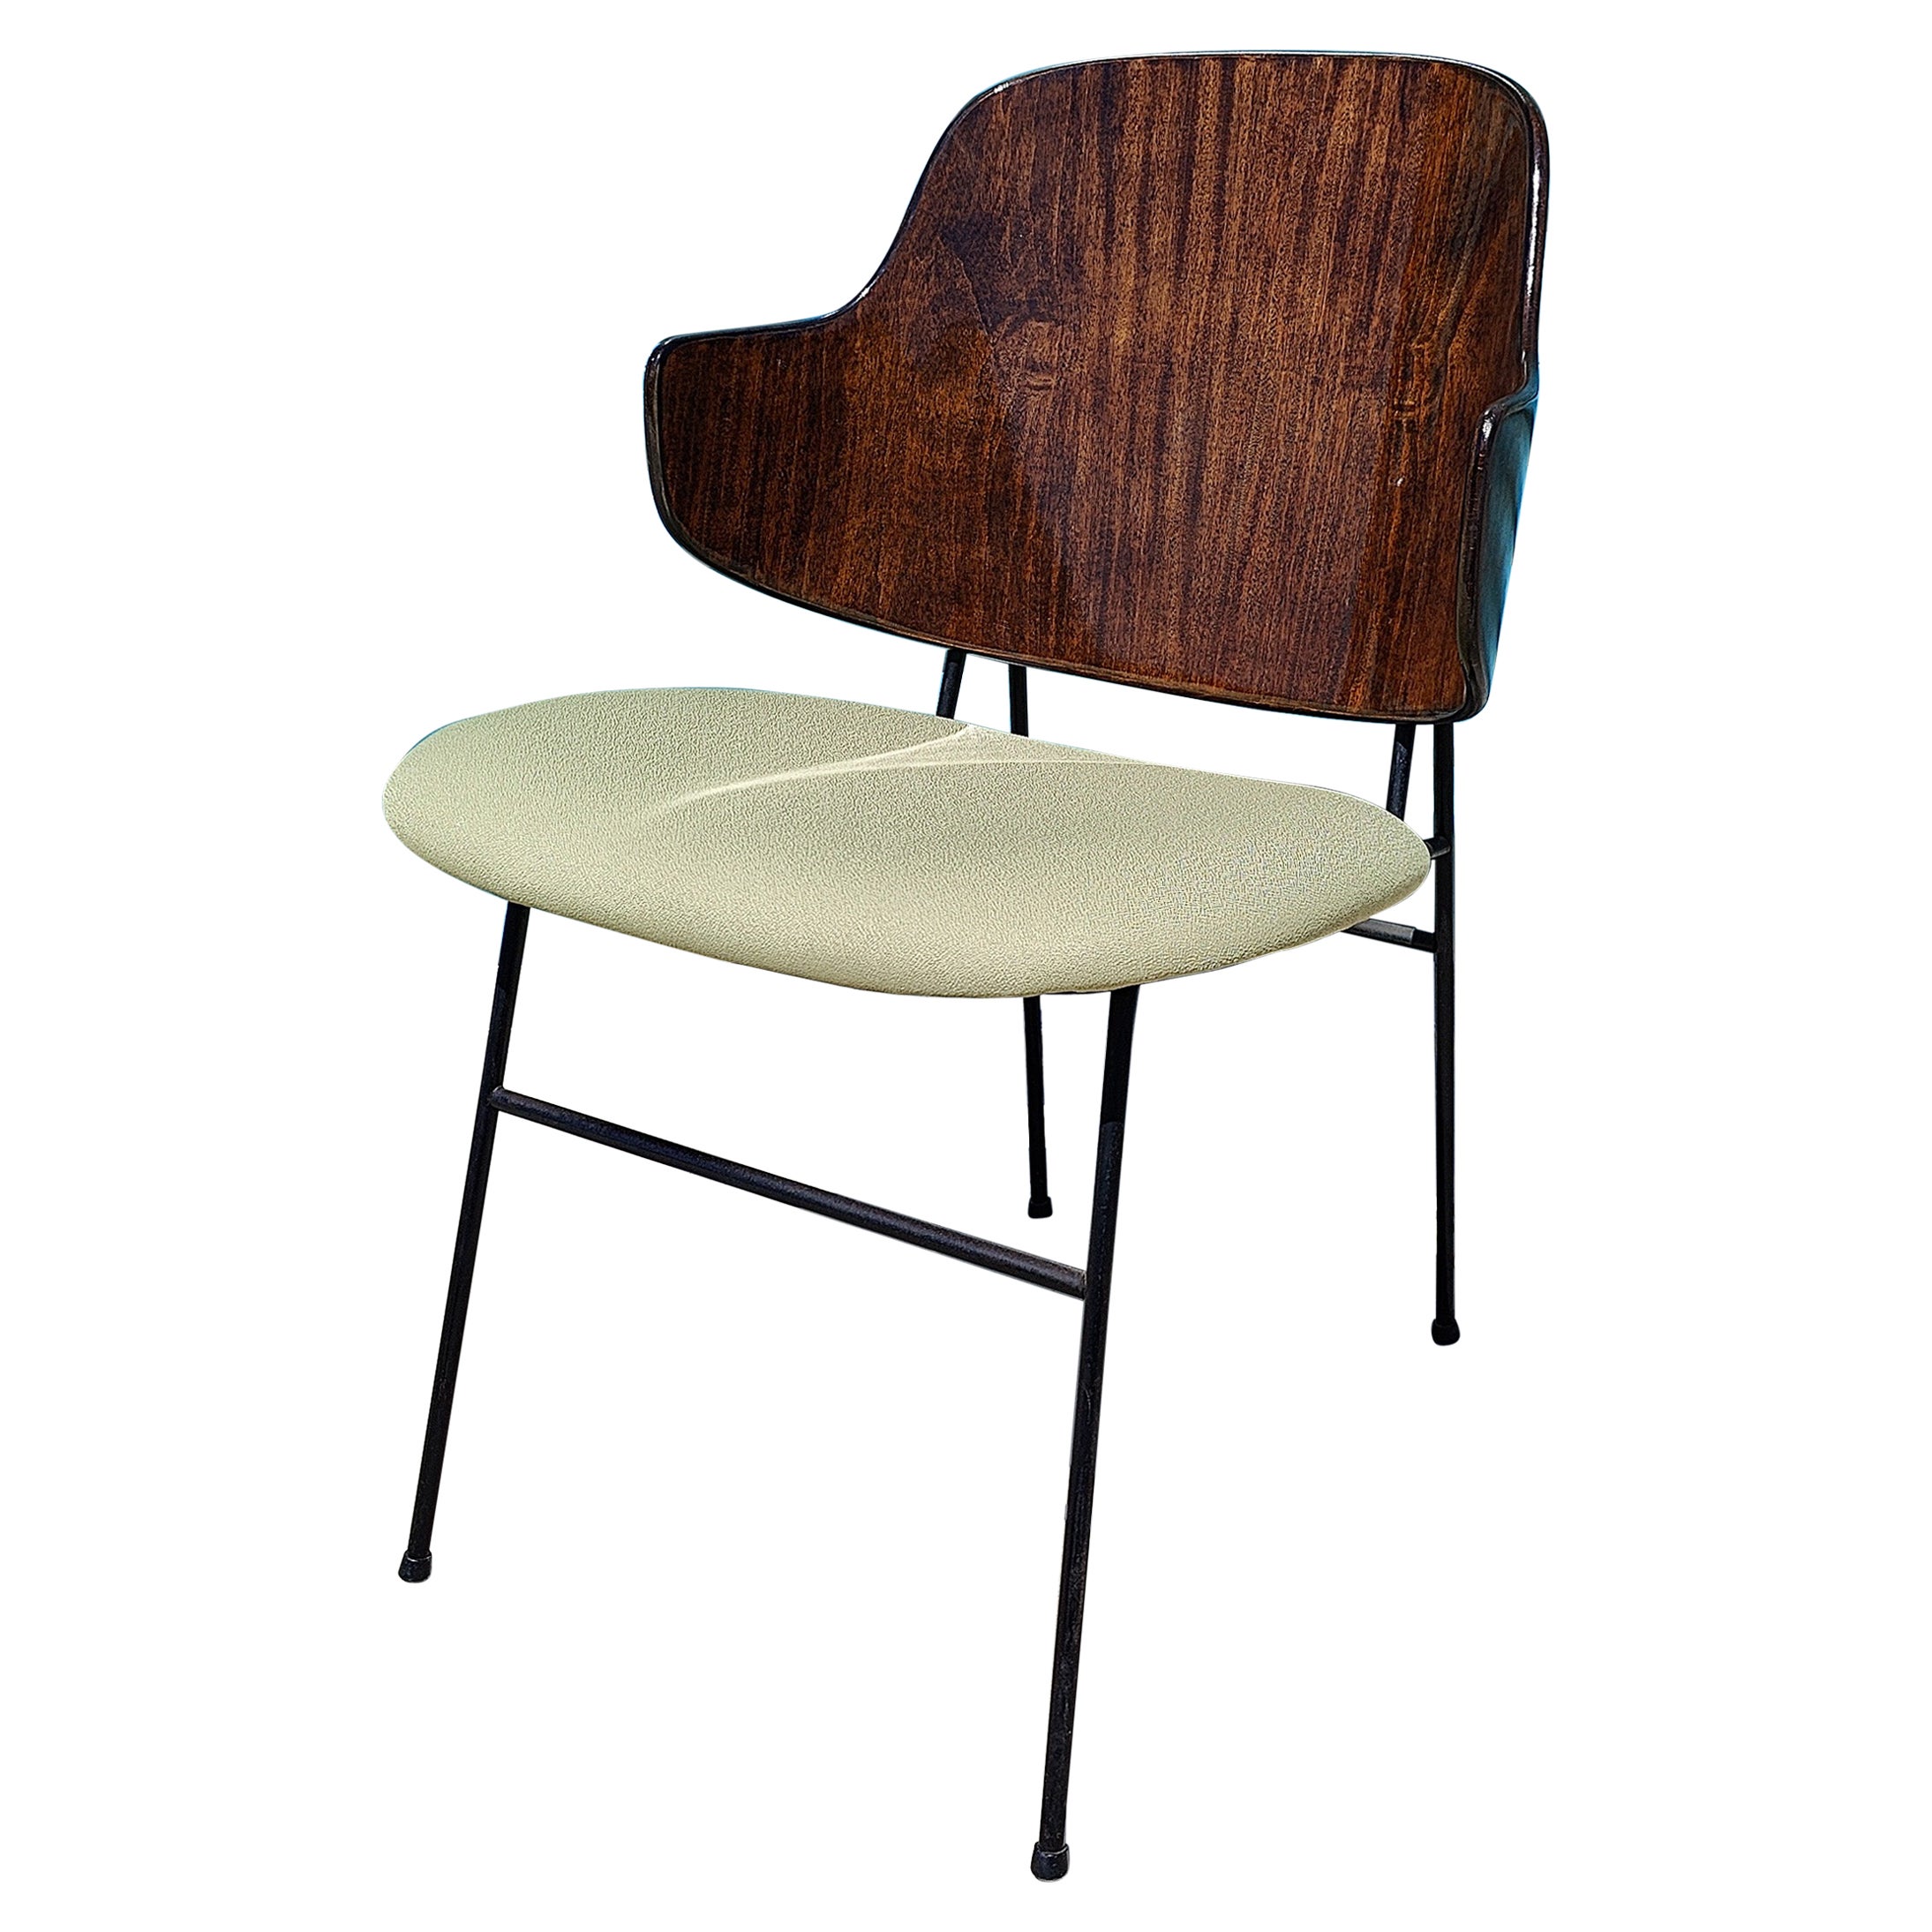 Vintage Mid-Century Modern Ib Kofod Larsen Penguin Chair